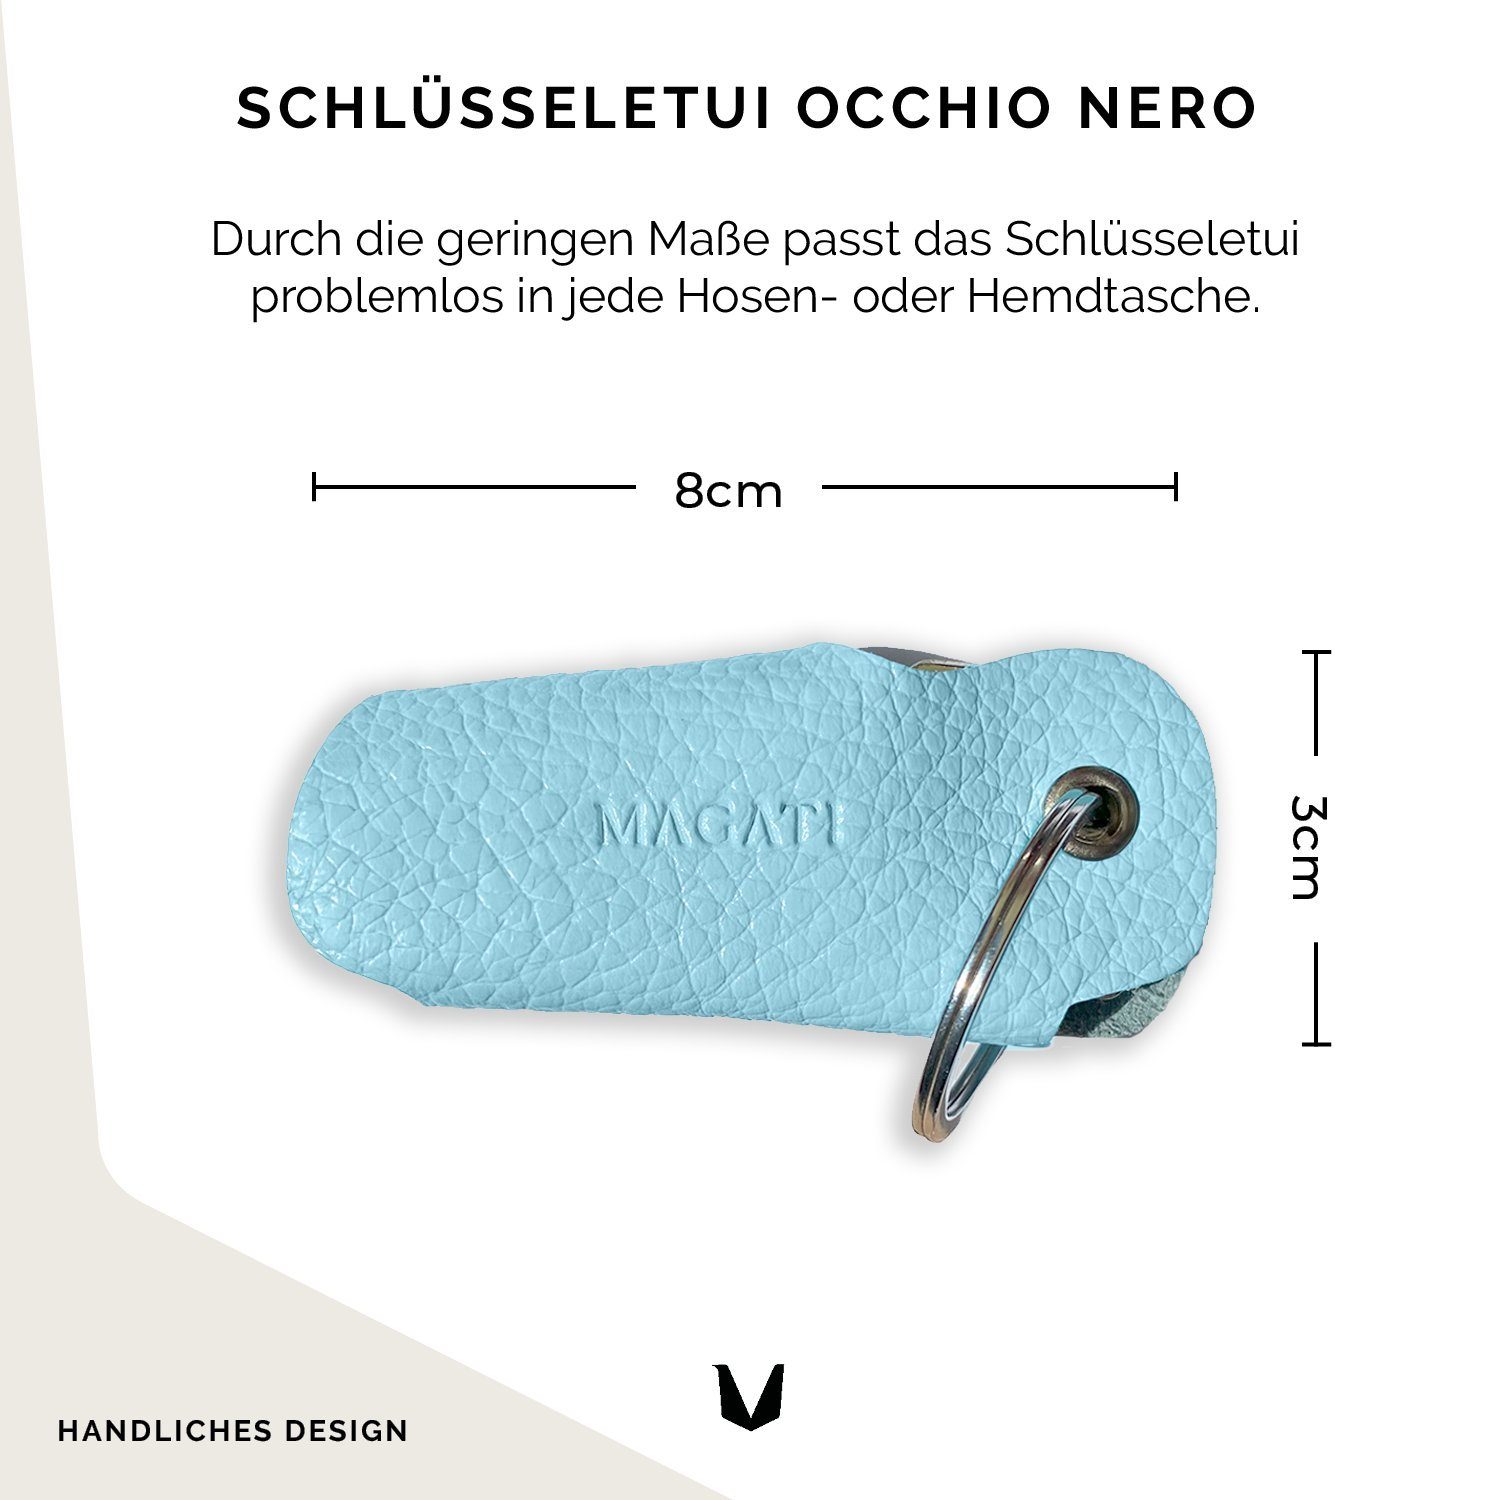 MAGATI Schlüsseltasche Occhio Nero aus 1-6 Einkaufswagenlöser, mit Schlüsselanhänger für Hellblau Leder Schlüssel, Platz